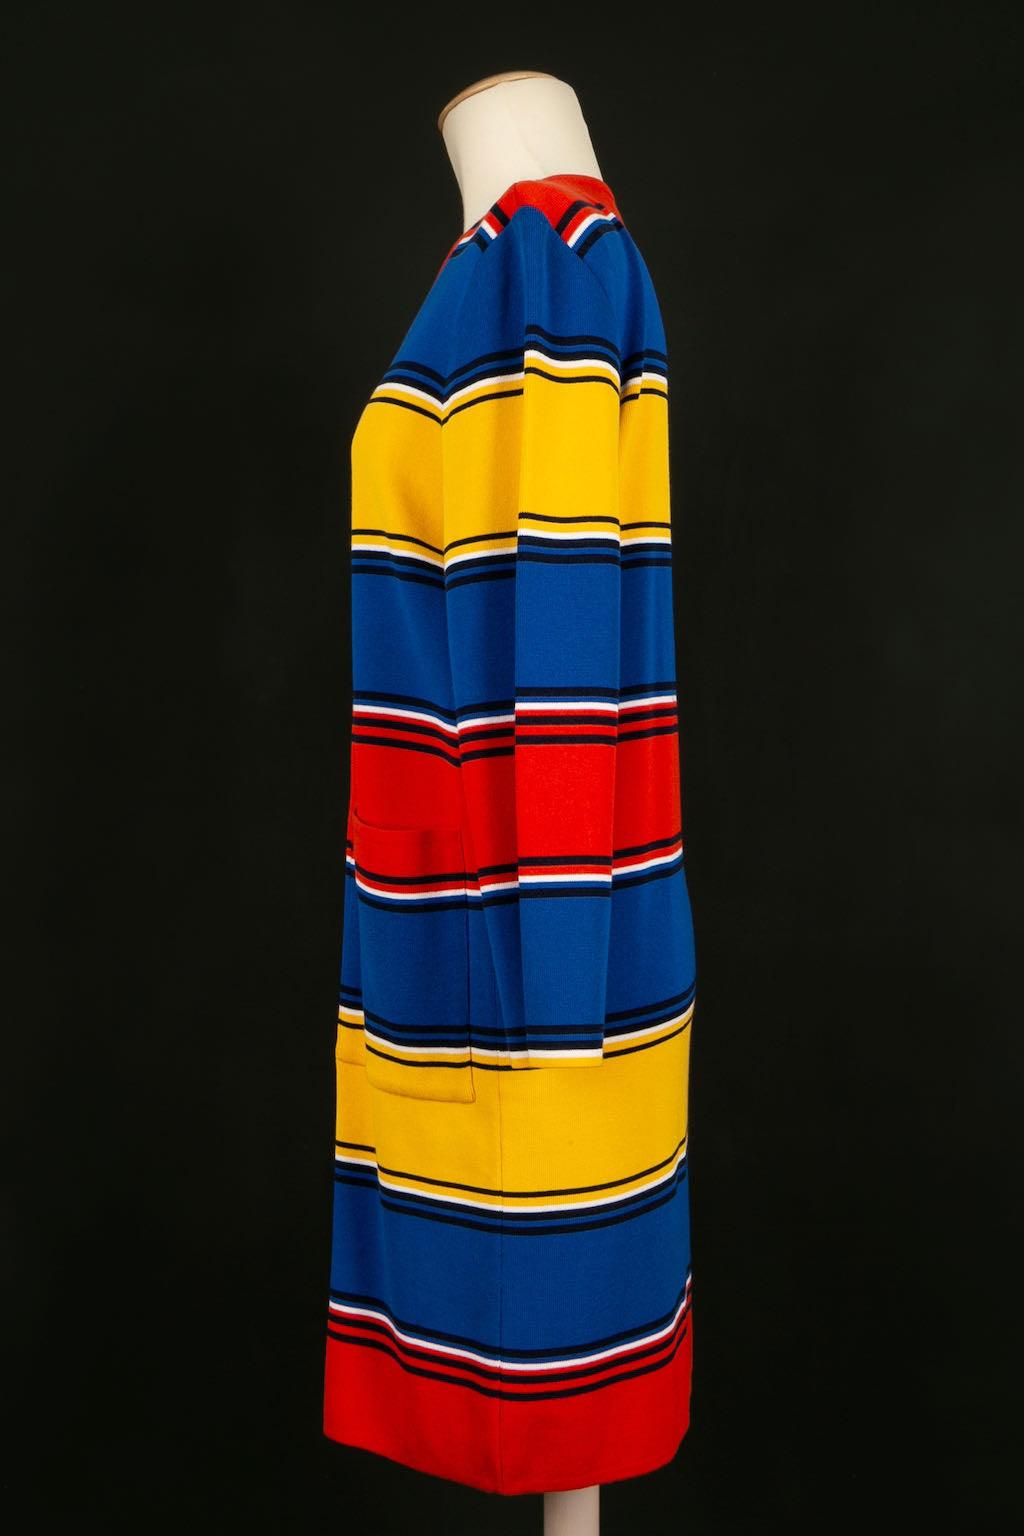 Yves Saint Laurent -Mehrfarbiges Strickmantelkleid. Fehlende Größe und Zusammensetzung Label, dieses Stück passt eine Größe 40FR.

Zusätzliche Informationen: 
Abmessungen: Schulterbreite: 40 cm, Brustumfang: 52 cm, Ärmellänge: 55 cm, Länge: 92